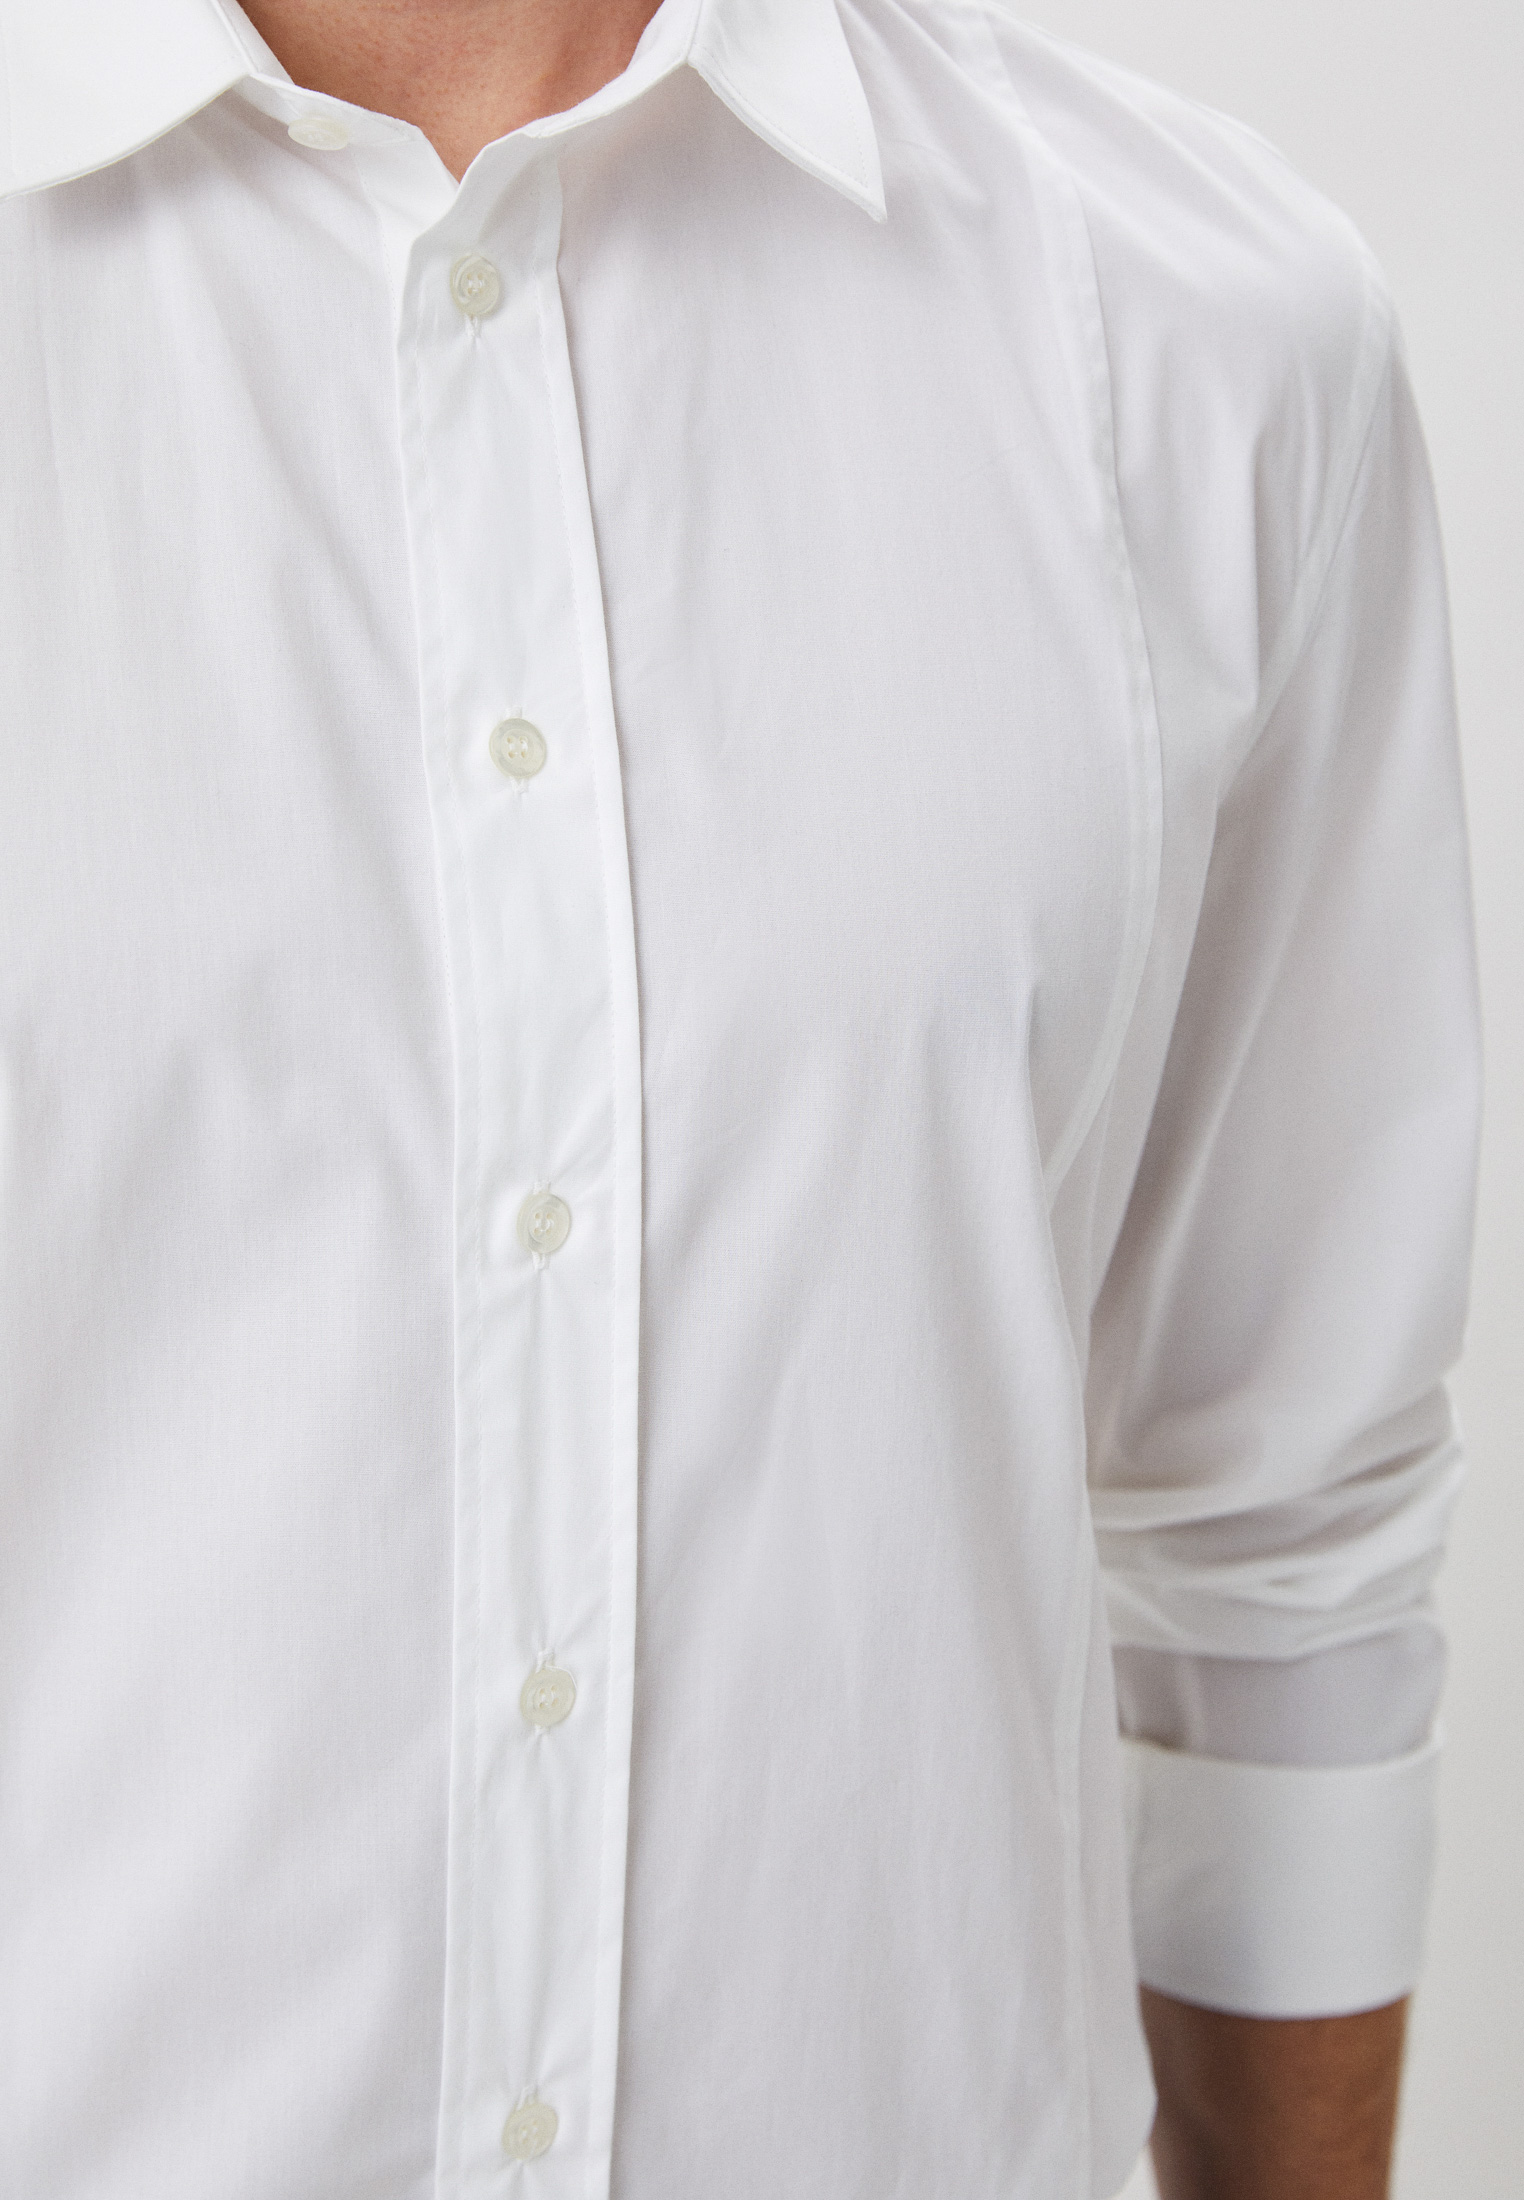 Рубашка с длинным рукавом Bikkembergs (Биккембергс) C C 073 00 S 2931: изображение 4